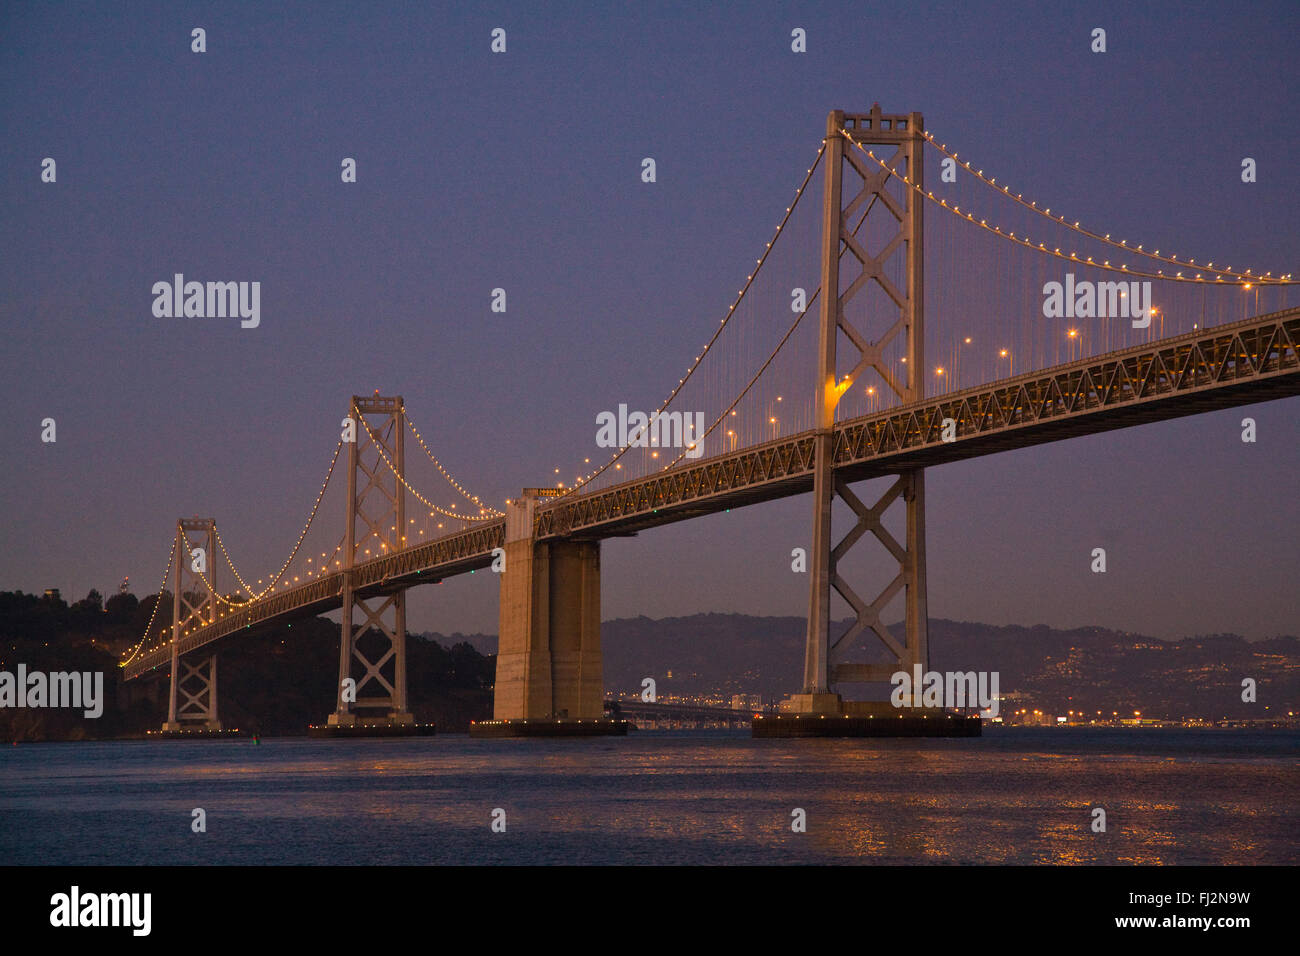 The BAY BRIDGE at night from THE EMBARCADERO - SAN FRANCISCO, CALIFORNIA Stock Photo